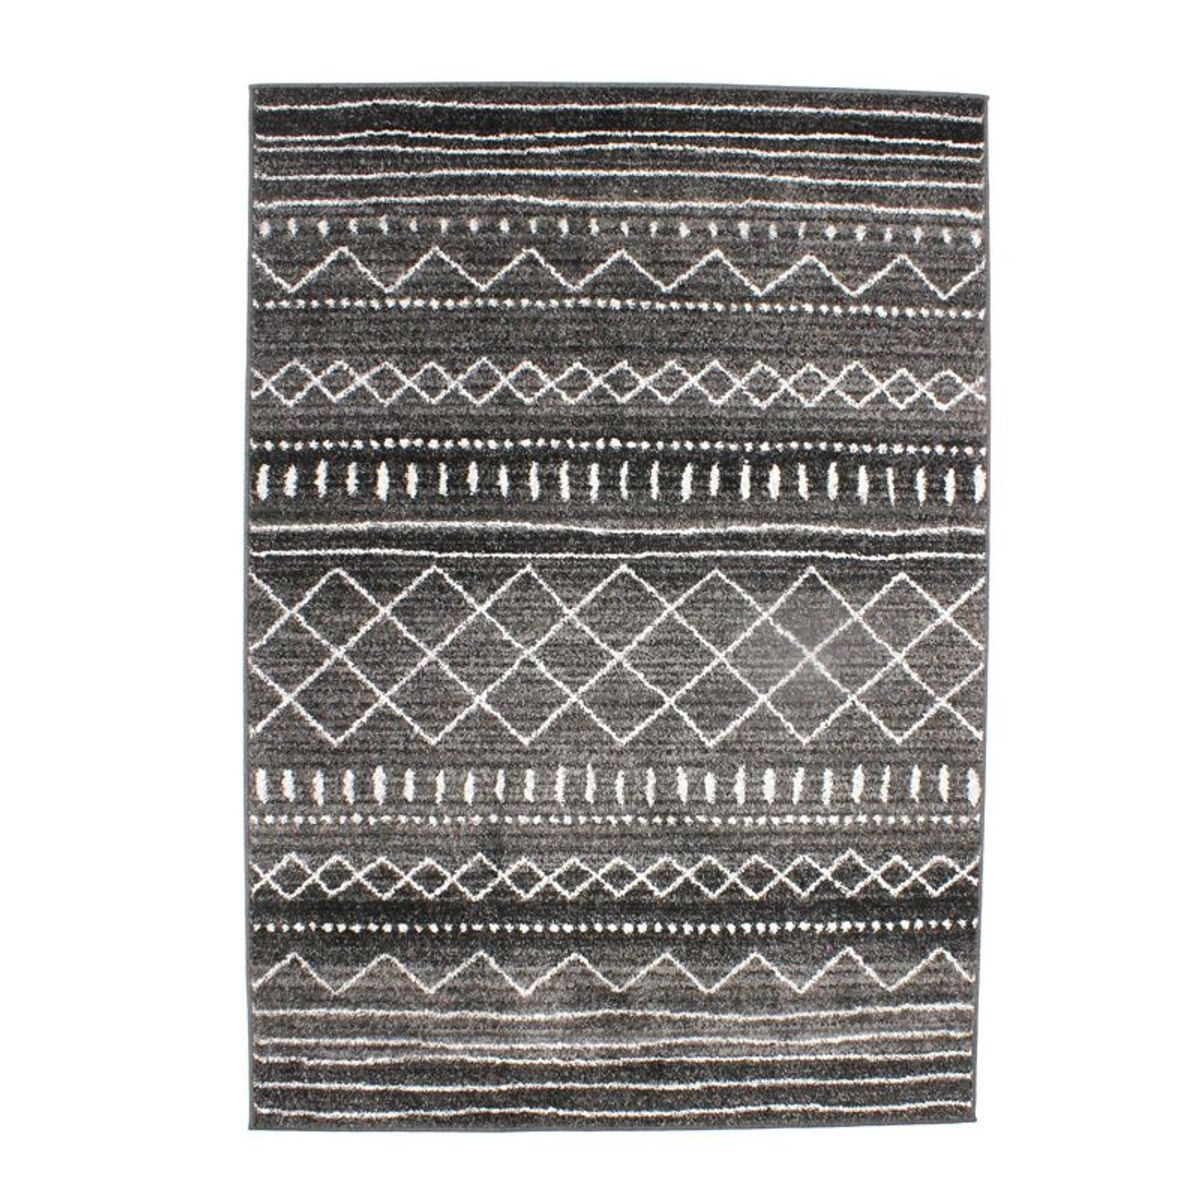 Tapis toucher laineux imprimé motifs ethniques noir 133x190